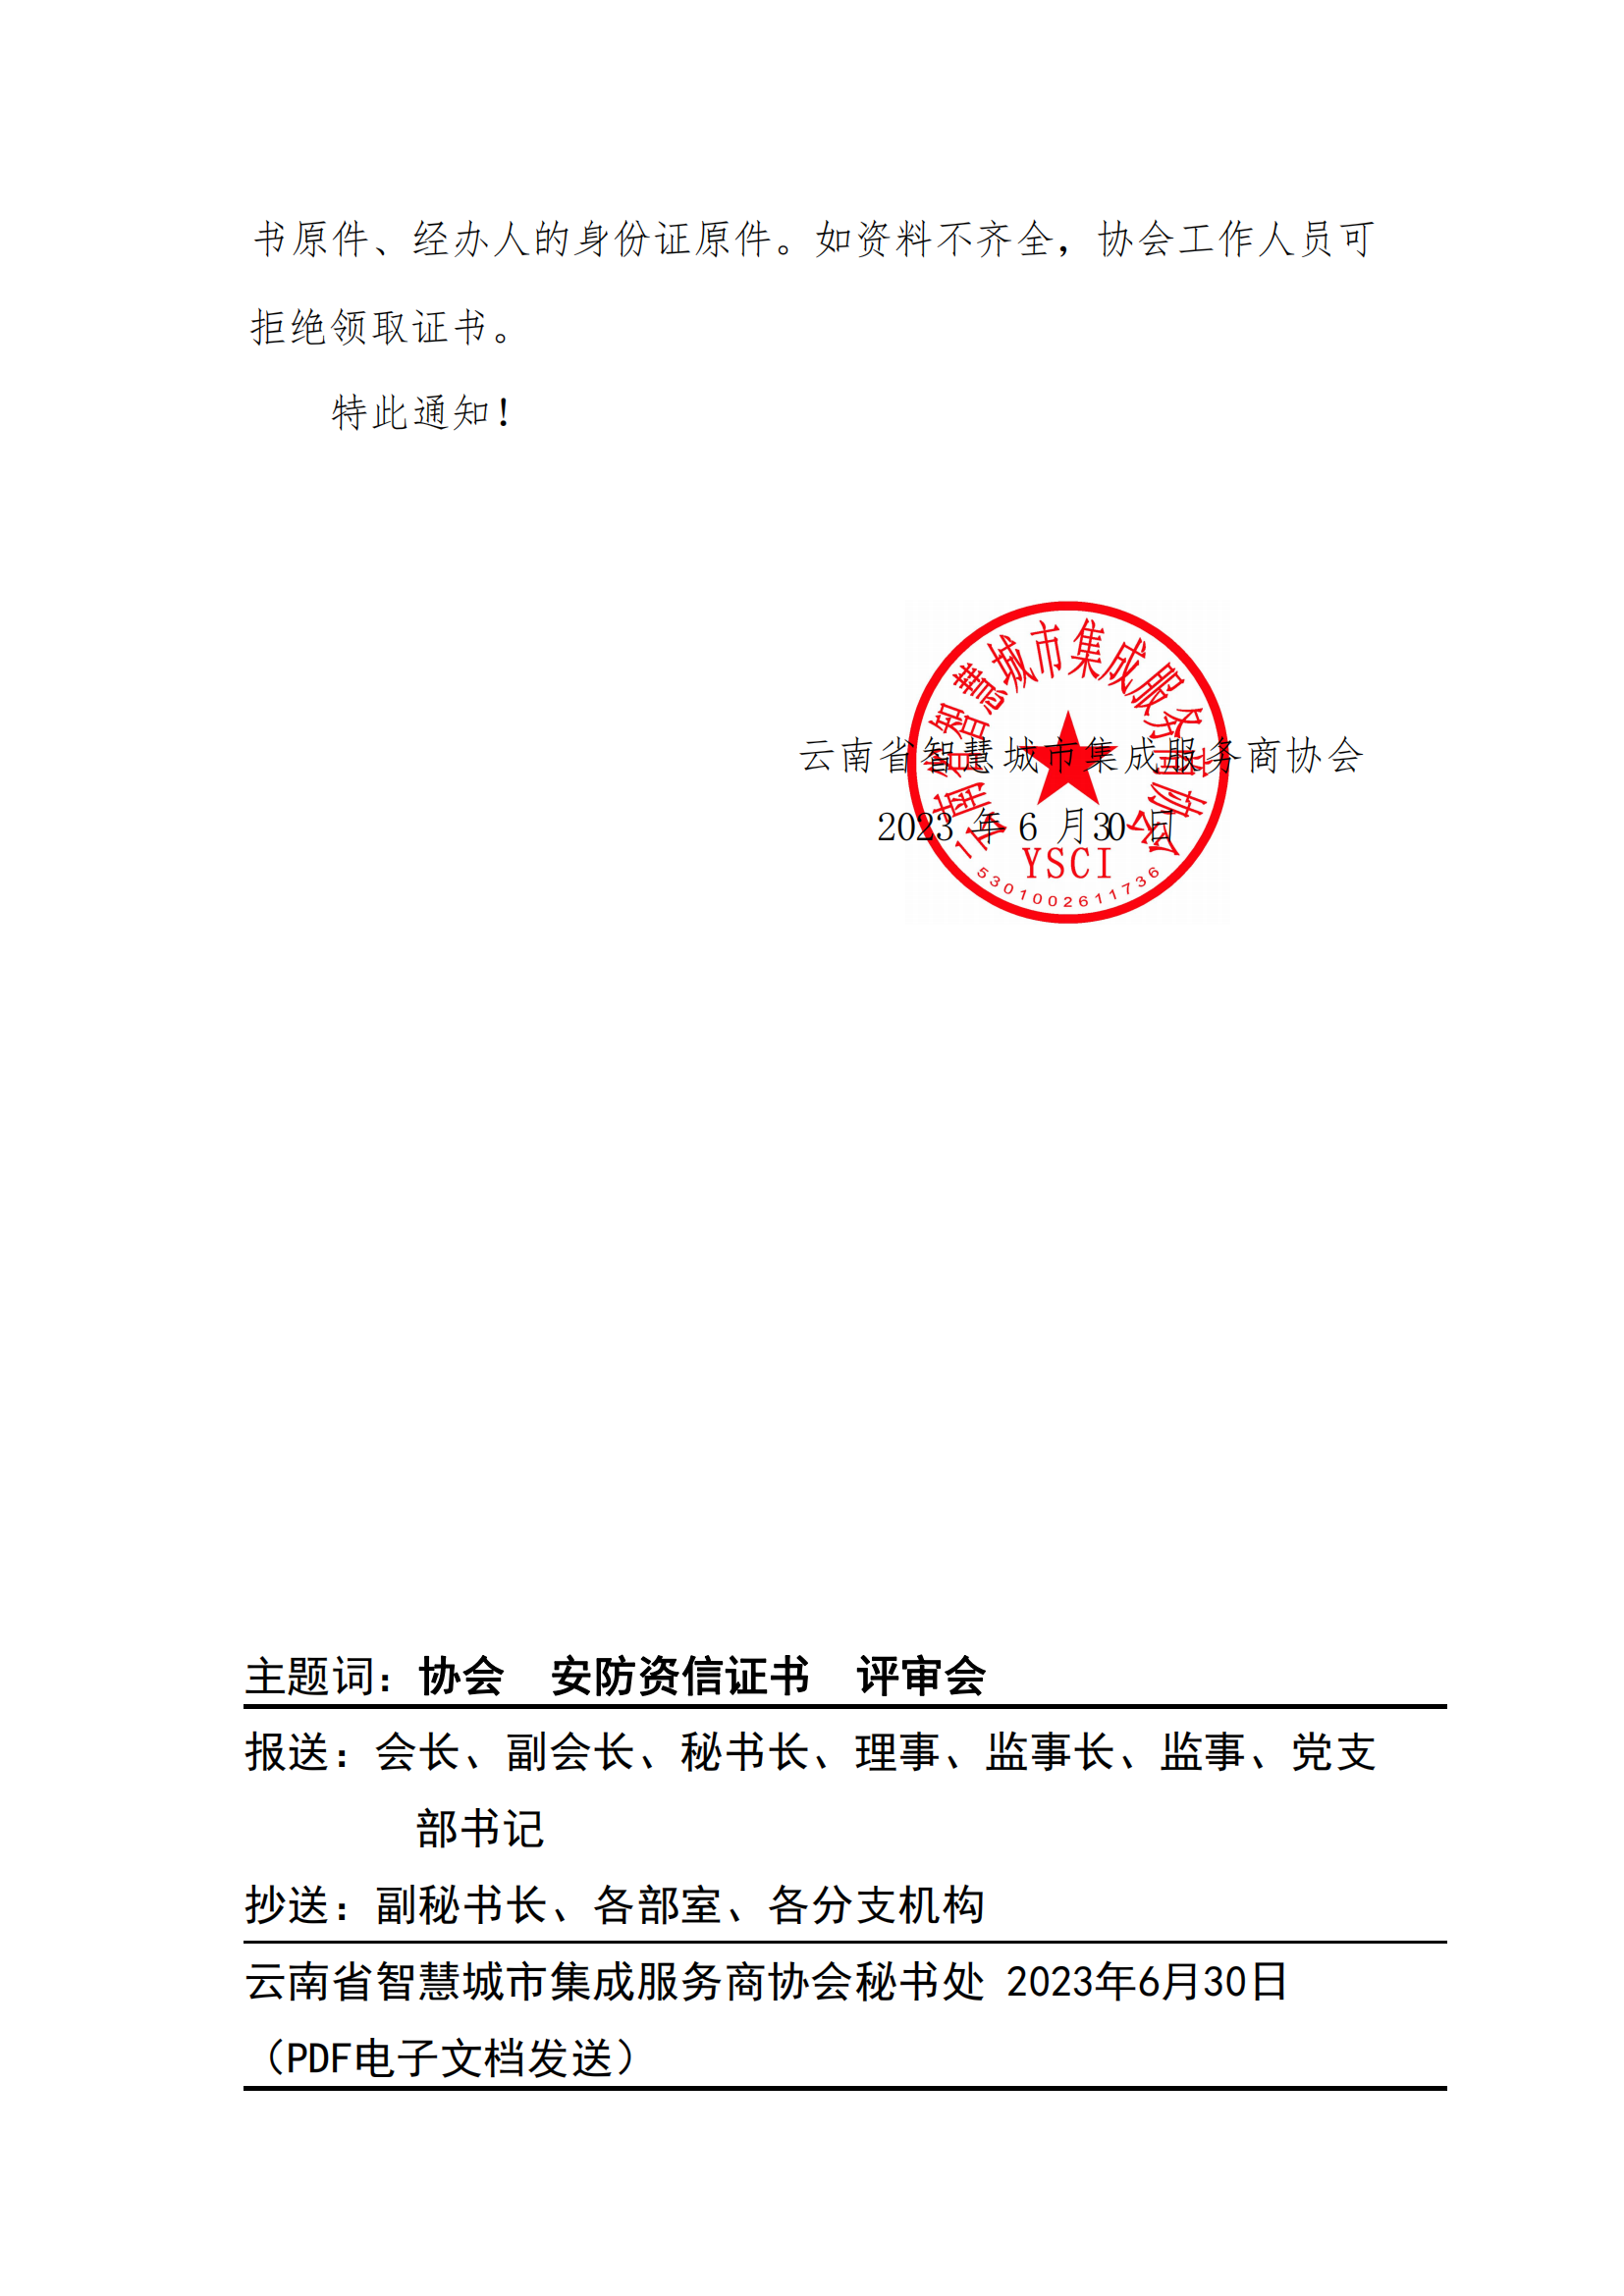 关于2023年第七批《云南省安全技术防范行业资信证》的领取通知_01.png